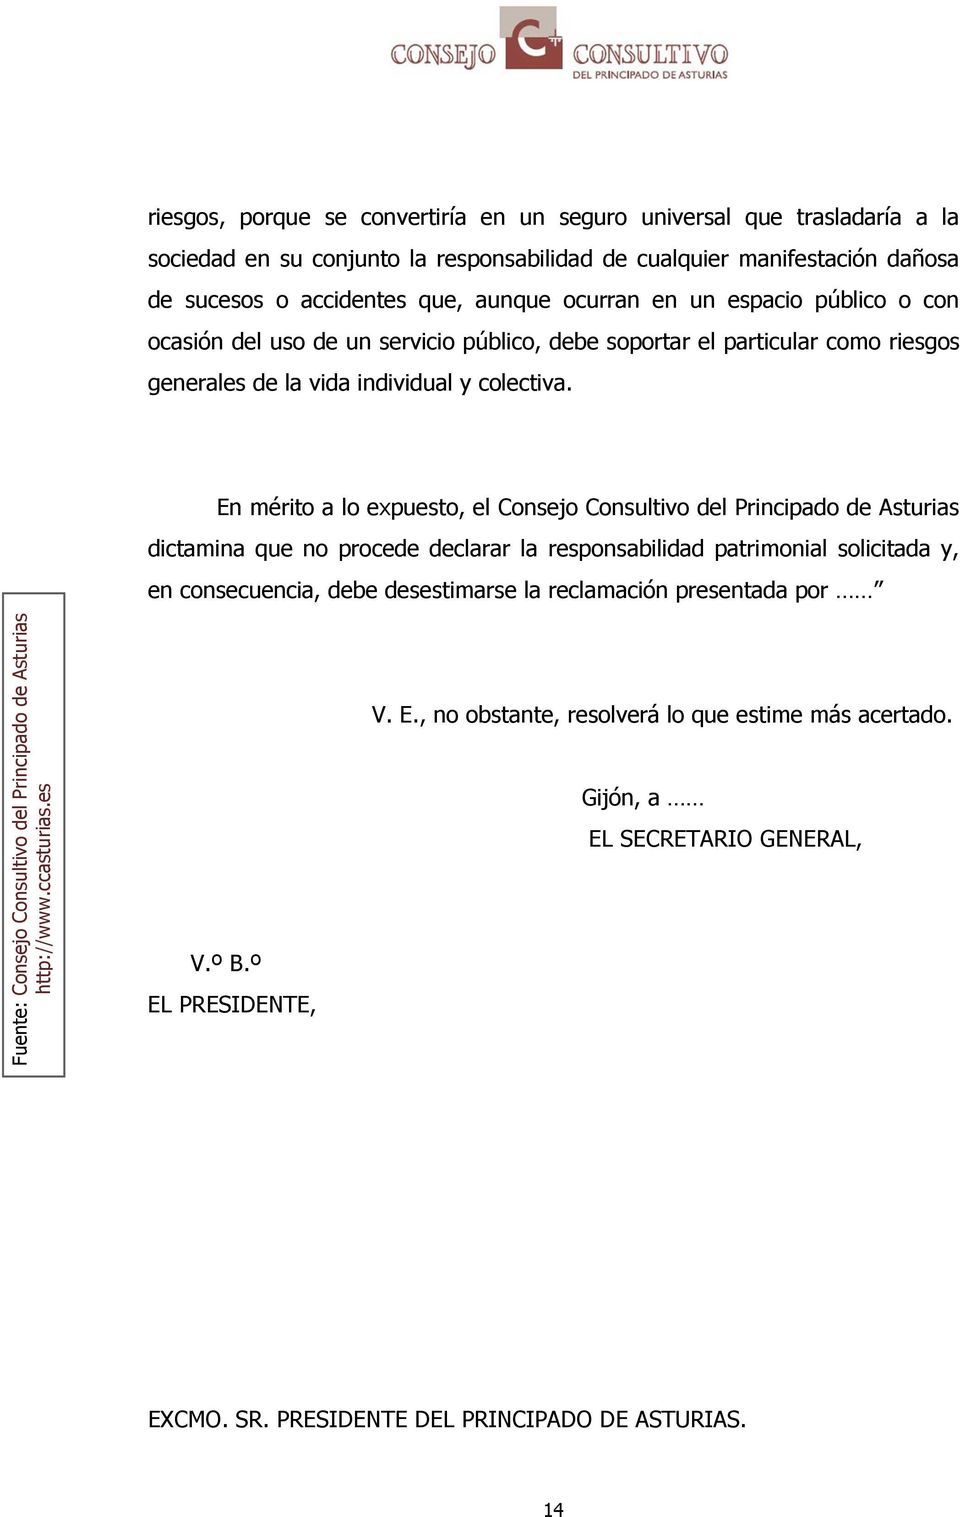 En mérito a lo expuesto, el Consejo Consultivo del Principado de Asturias dictamina que no procede declarar la responsabilidad patrimonial solicitada y, en consecuencia, debe desestimarse la